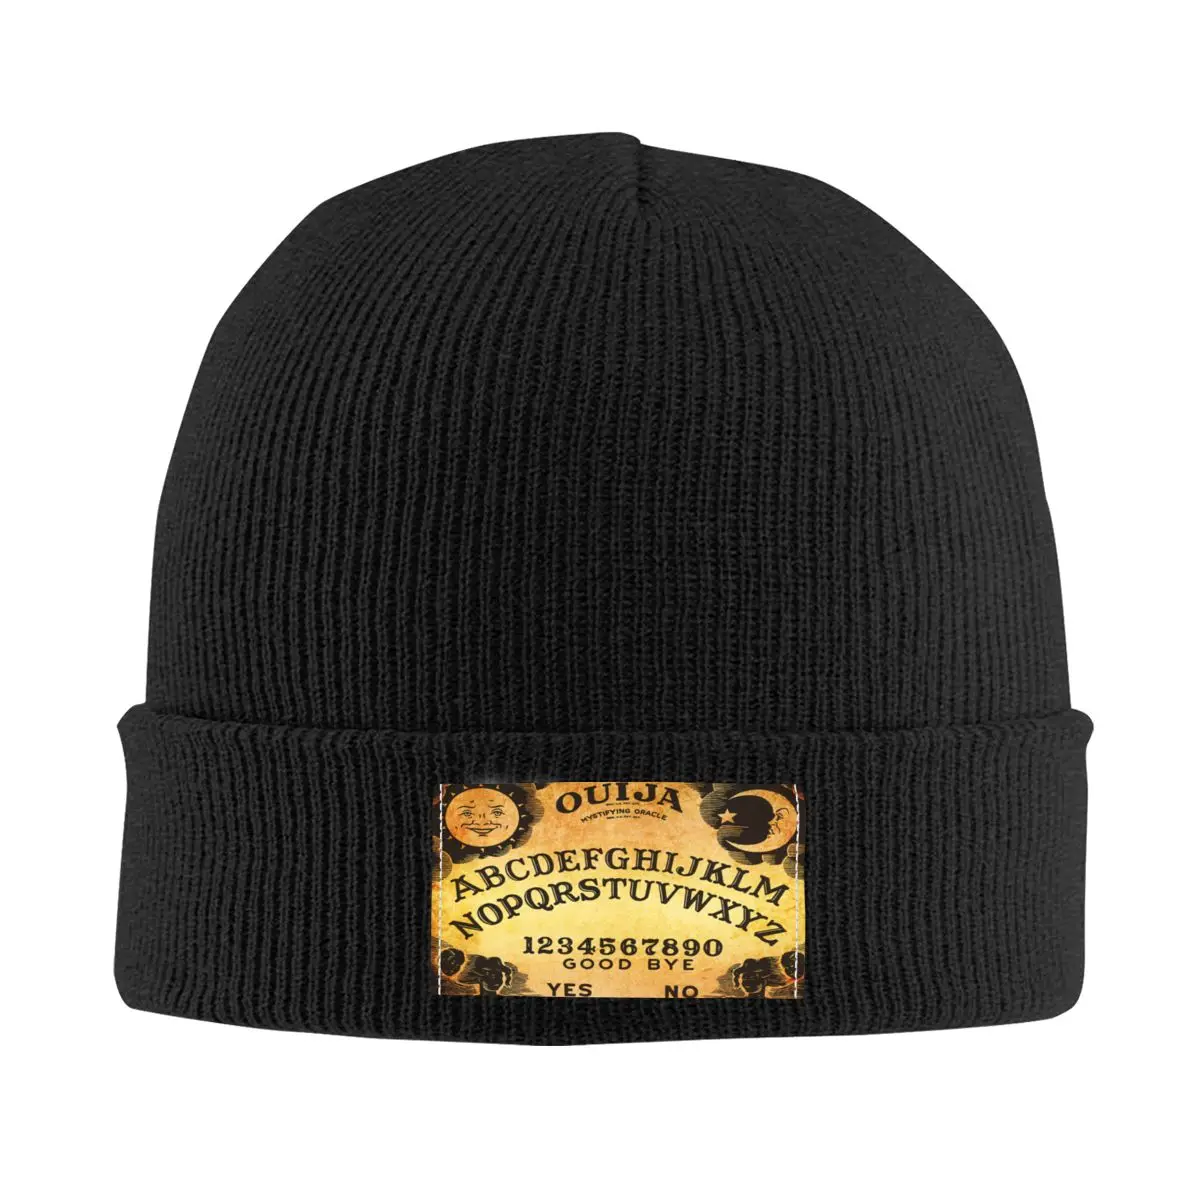 

Ouija доска шприц шапочки облегающие шапки унисекс уличная одежда зимняя вязаная шапка взрослый дух Хэллоуин гадания шляпа головные уборы